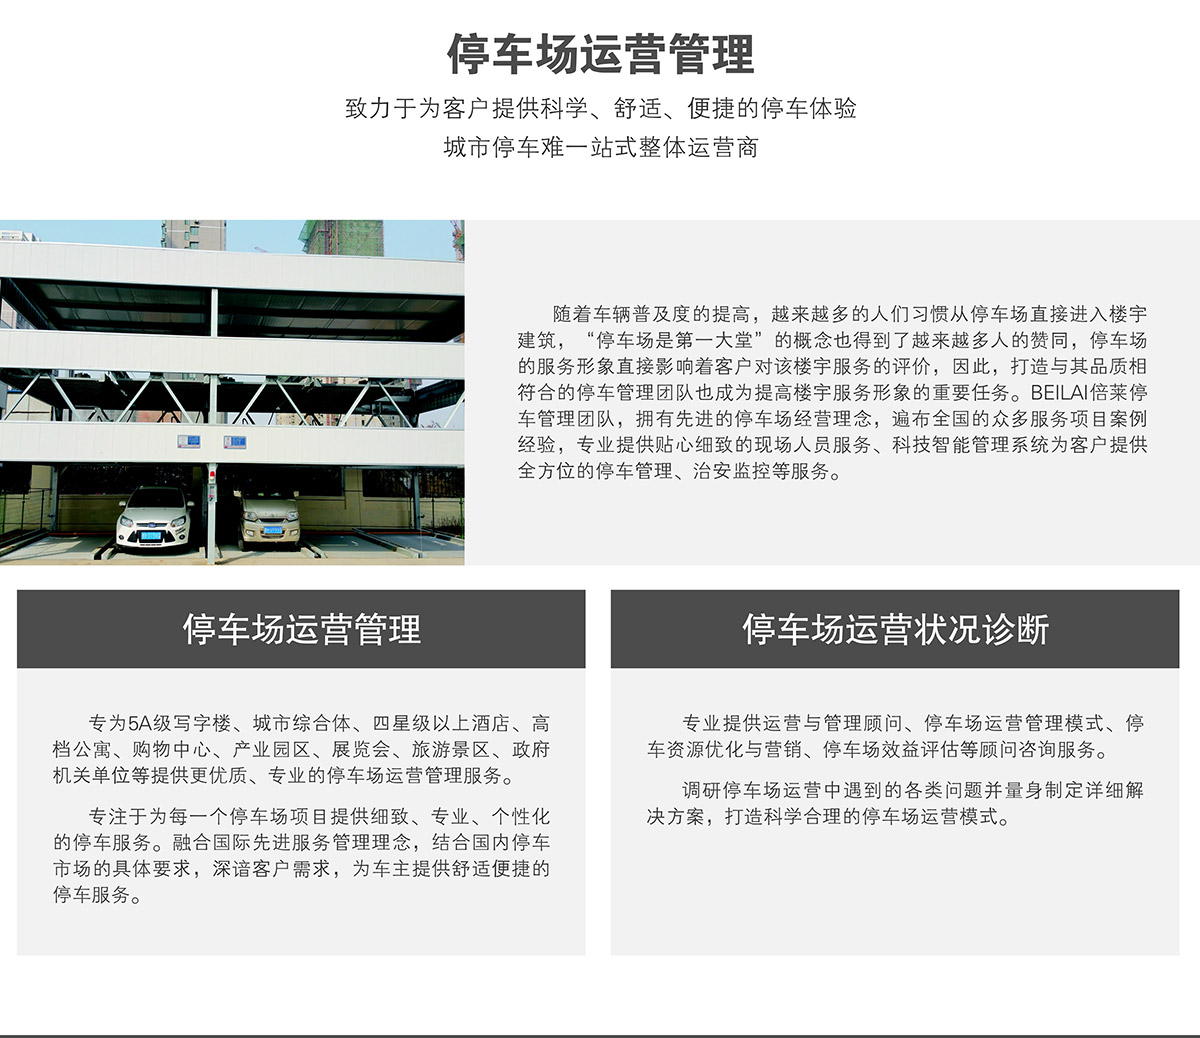 重庆停车场运营管理为客户提供科学舒适便捷的停车体验.jpg